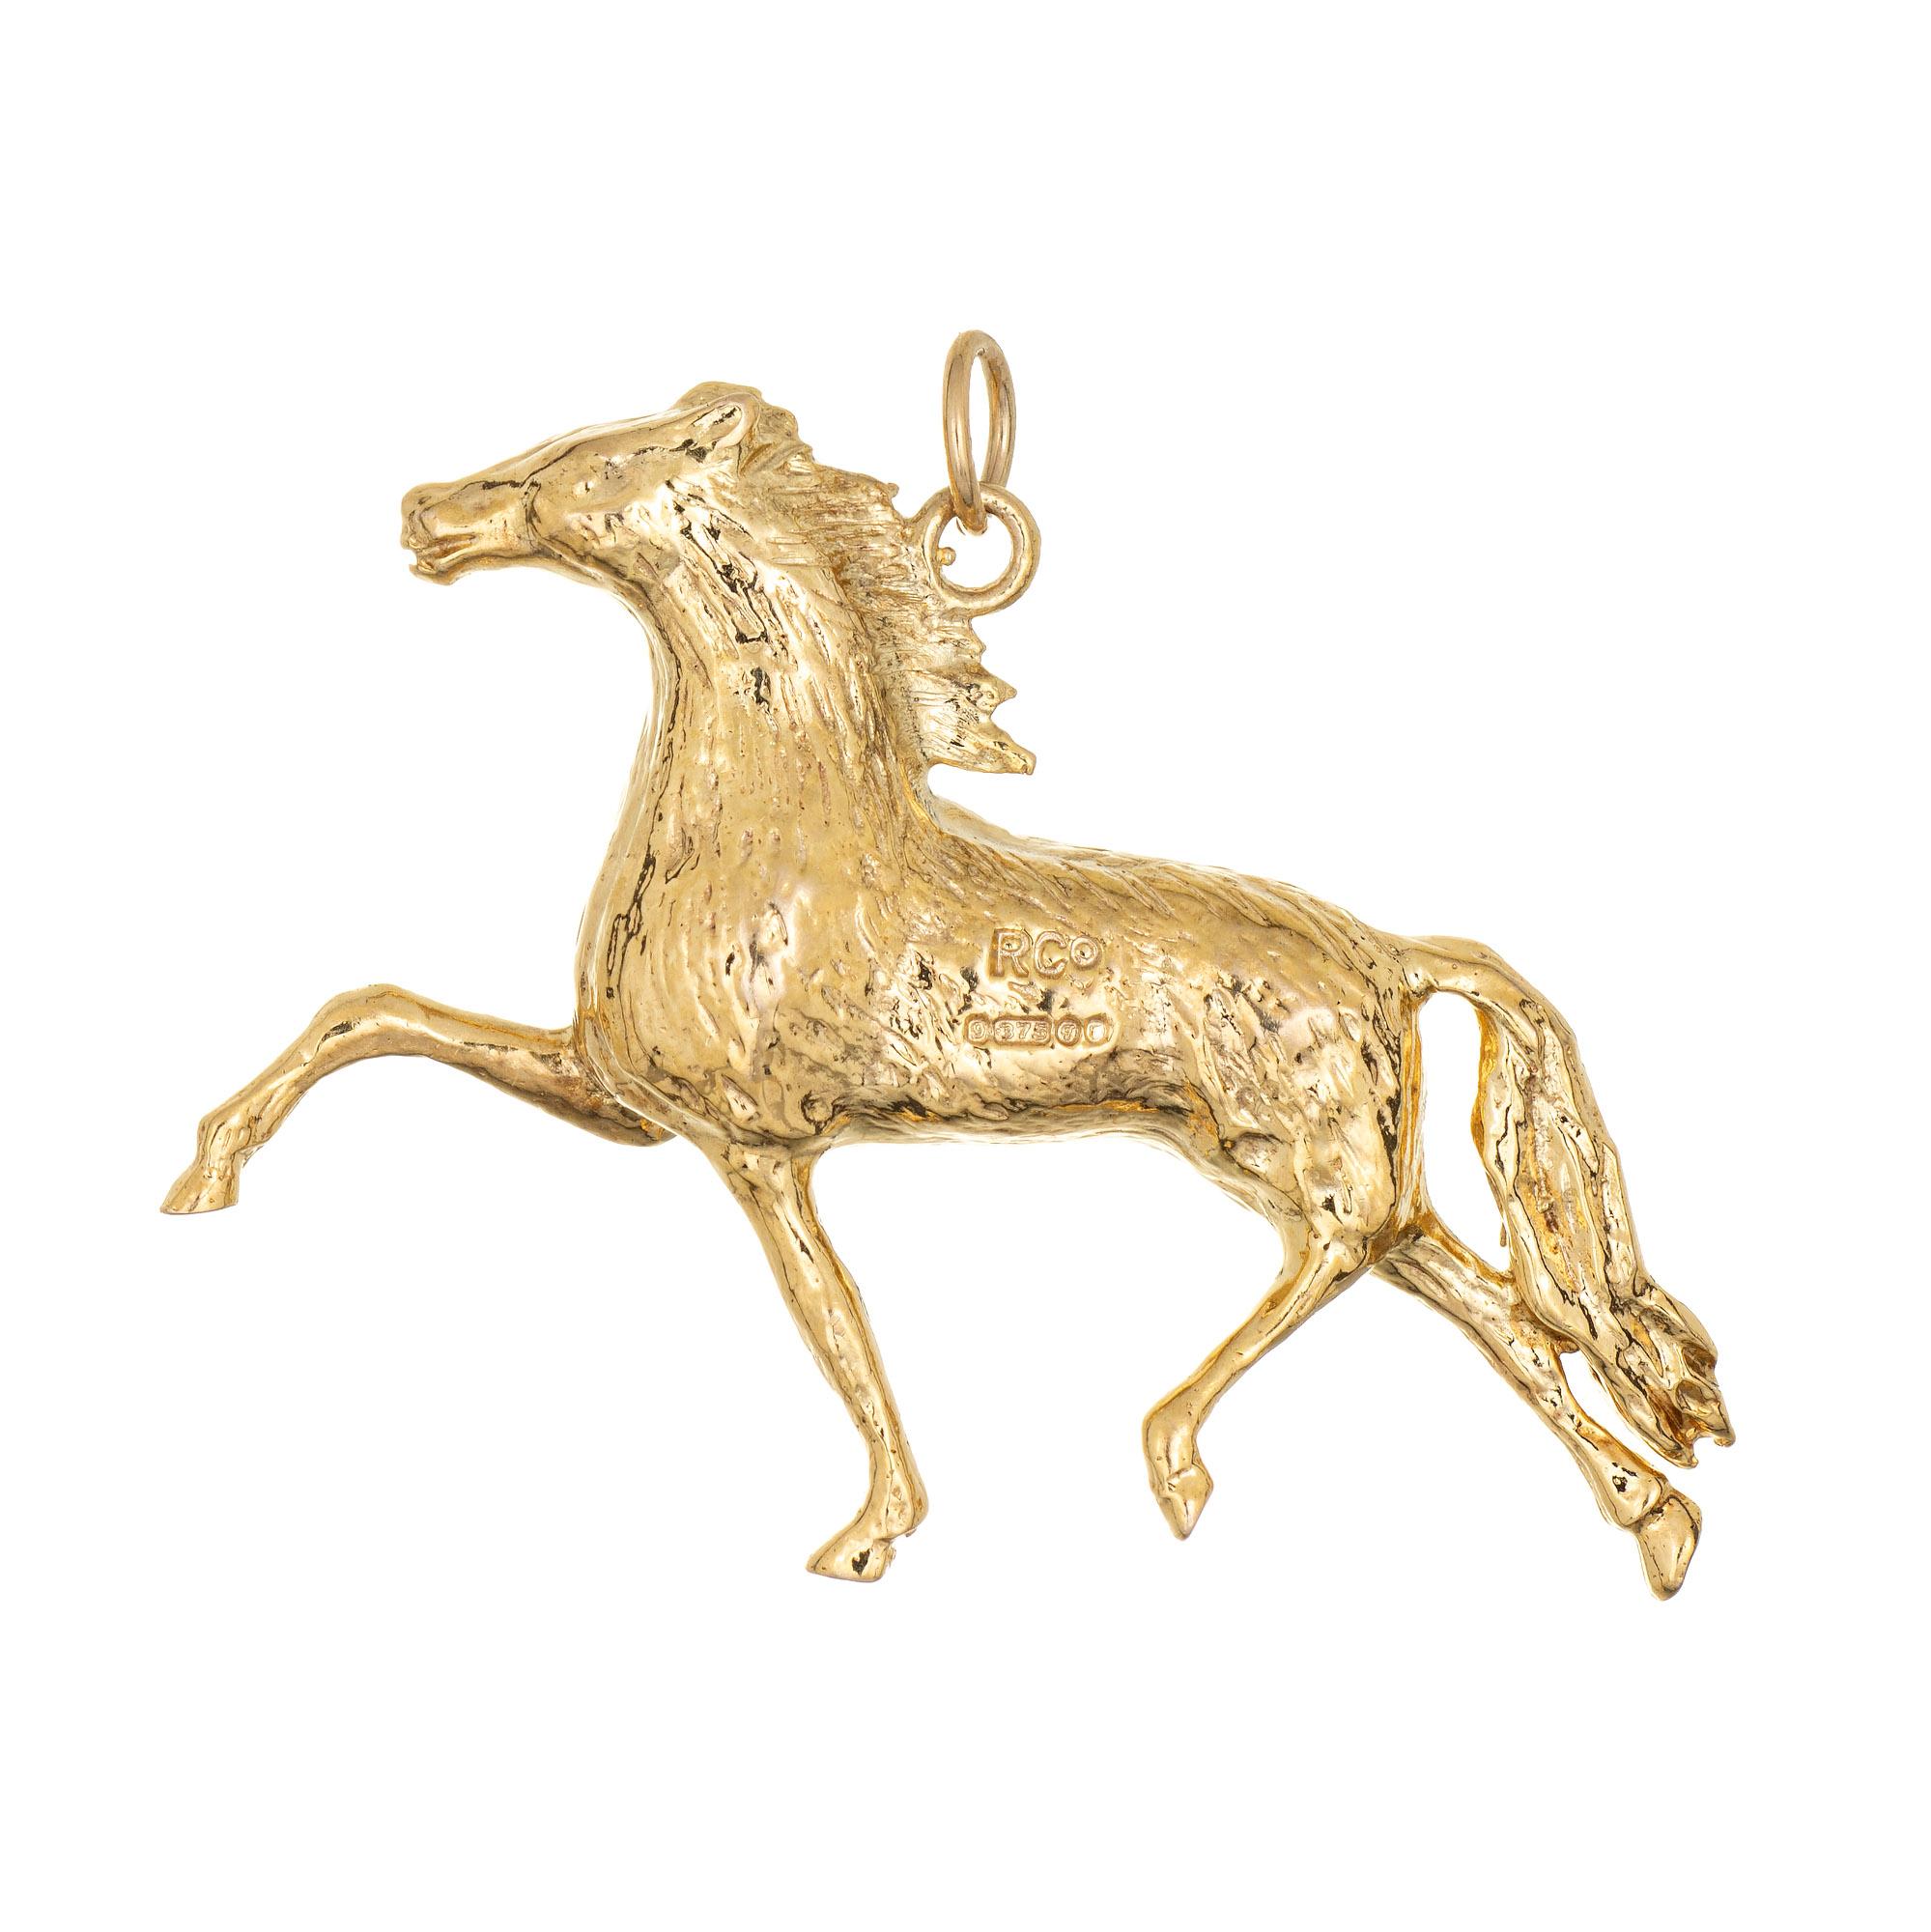 Feiner, detaillierter Vintage-Pferde-Charme aus 9 Karat Gelbgold.  

Das Pferd ist naturgetreu nachgebildet und galoppiert mit beweglichen Beinen. Das Stück kann als Charme an einem Armband oder als Anhänger getragen werden.

Der Charme ist in sehr